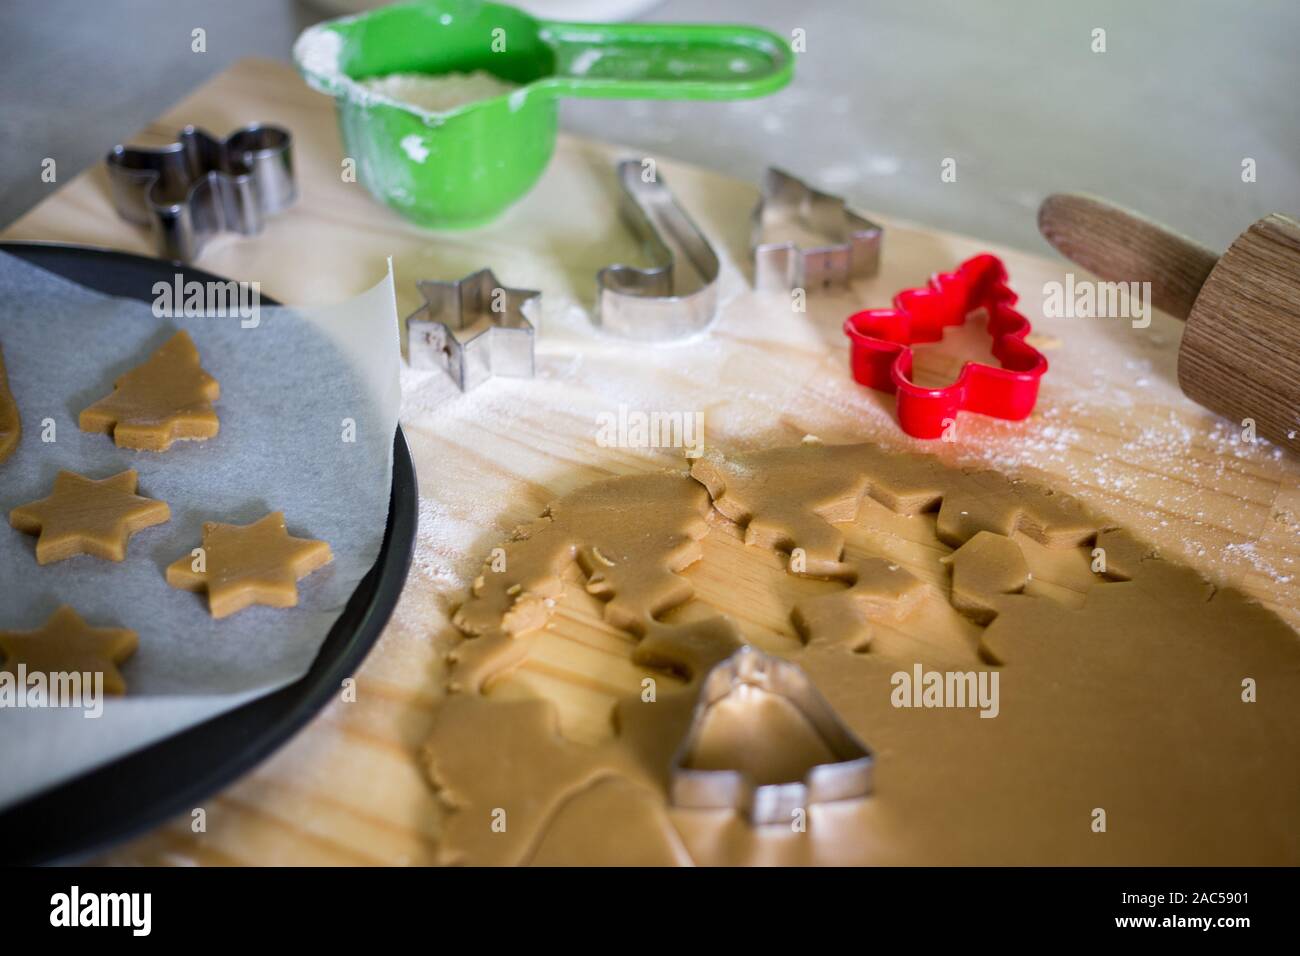 Über Weihnachten geformte Ausstecher Lebkuchen Kekse an Weihnachten zu machen Stockfoto